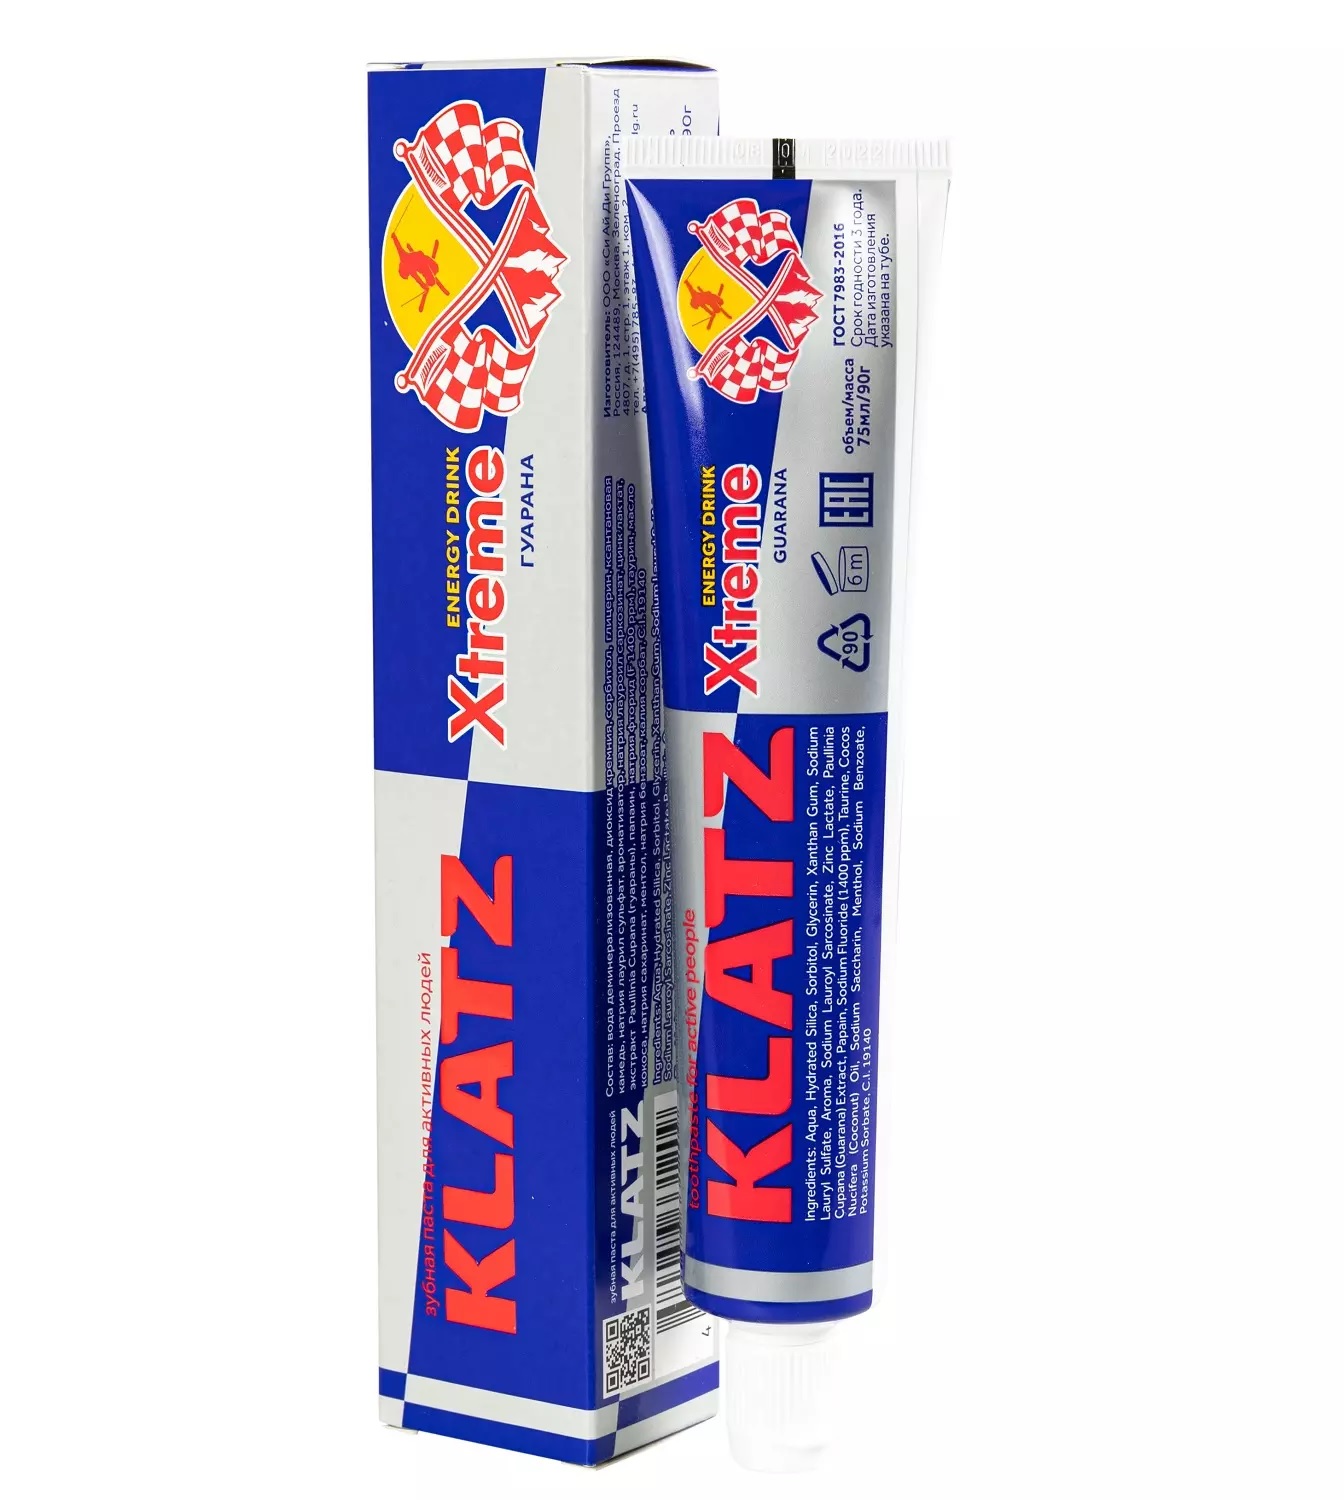 Паста зубная Klatz X-treme Energy Drink для активных людей, гуарана, 75 мл klatz паста зубная для активных людей гуарана x treme energy drink 75 мл